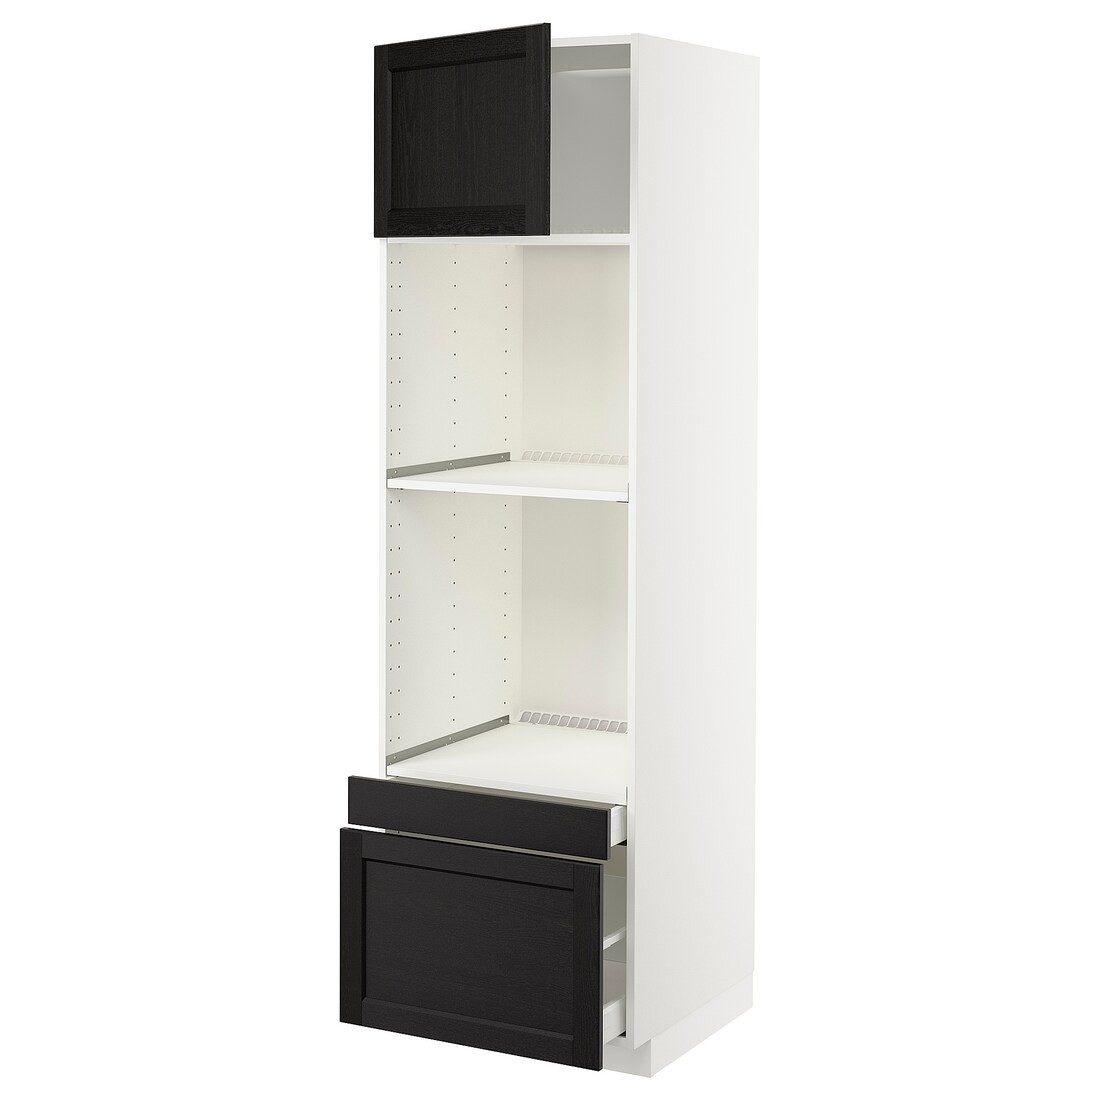 IKEA METOD МЕТОД / MAXIMERA МАКСИМЕРА Высокий шкаф для духовки комби с дверцей / ящиками, белый / Lerhyttan черная морилка, 60x60x200 см 29464240 | 294.642.40